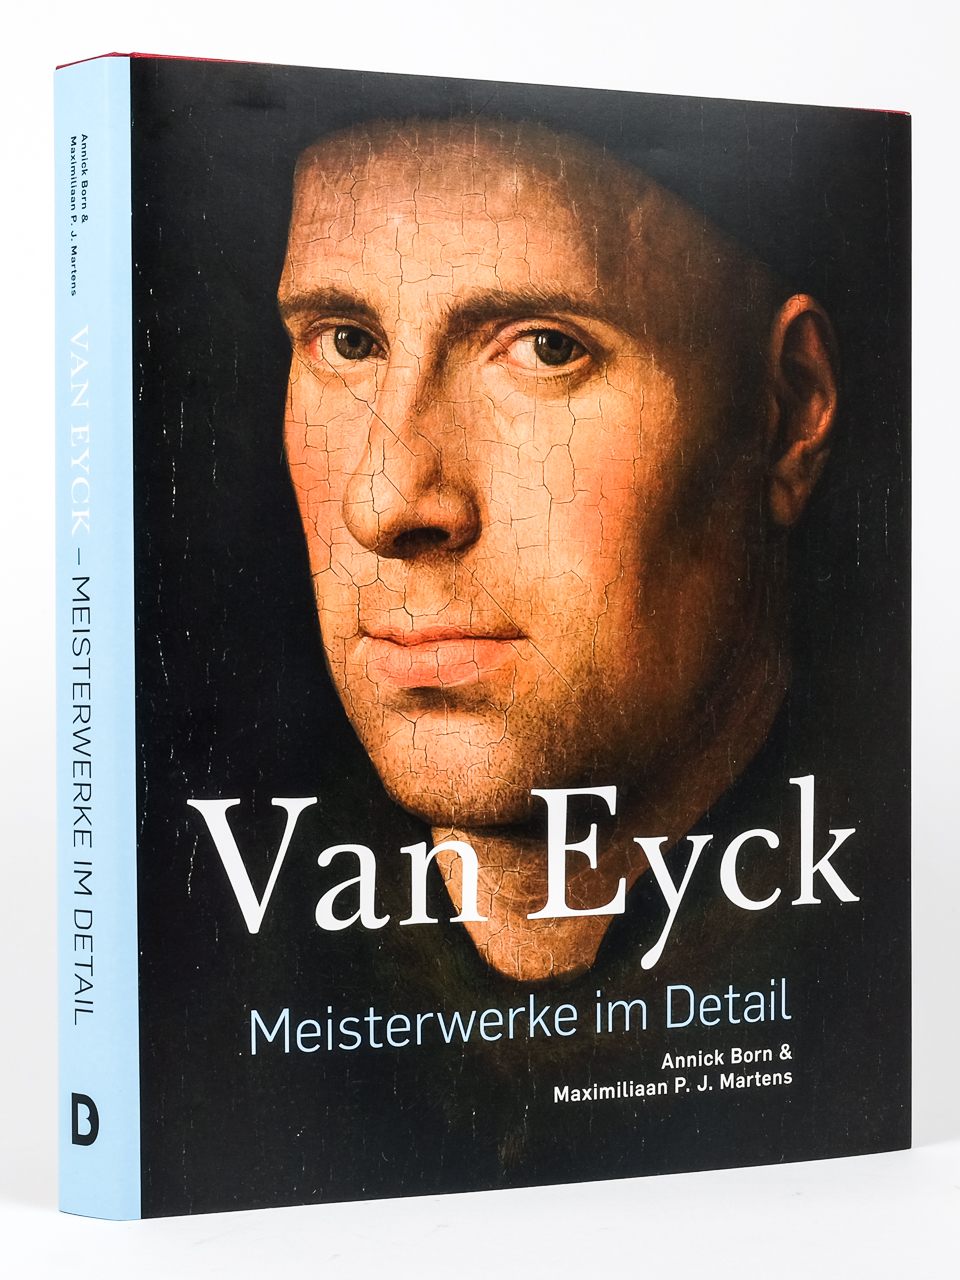 Van Eyck - Meisterwerke im Detail